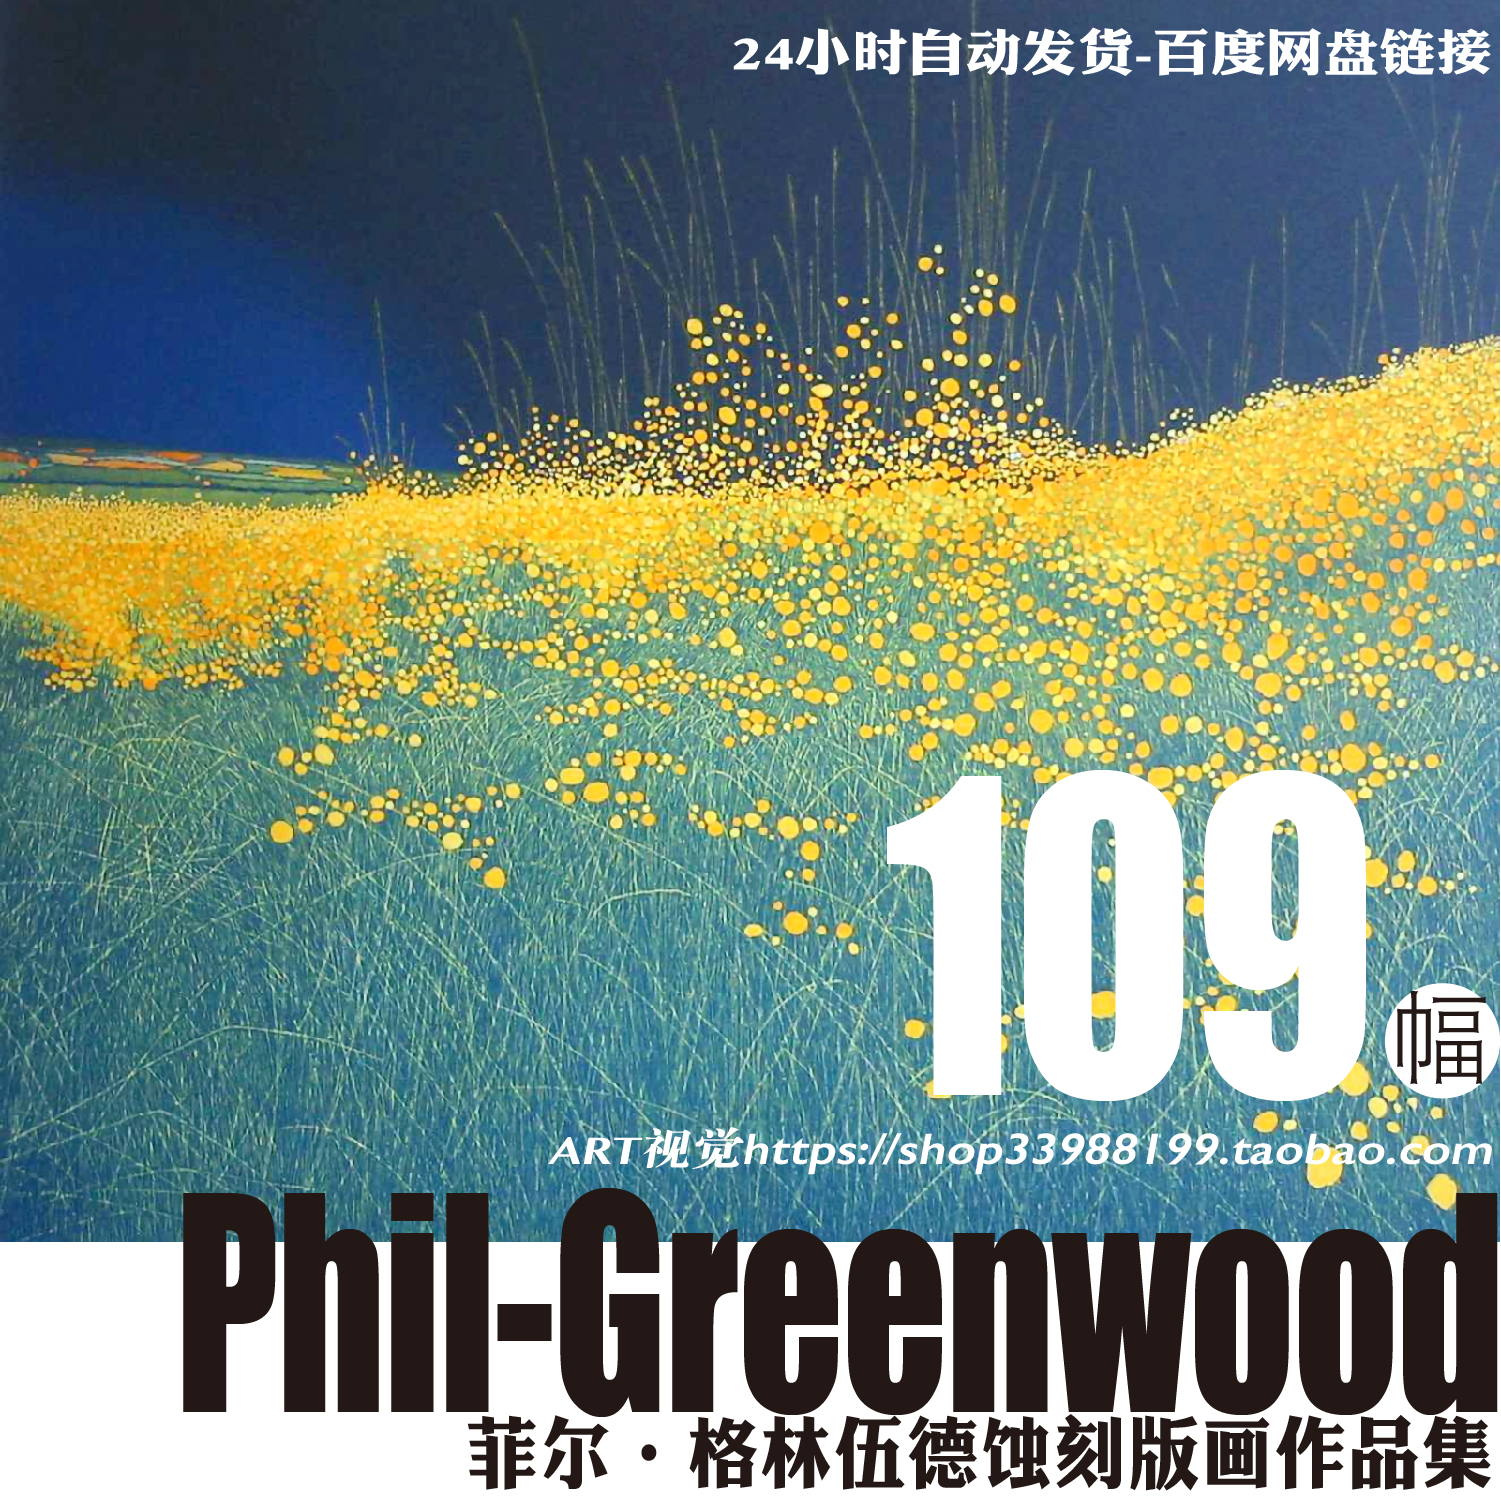 英国菲尔·格林伍德Phil Greenwood蚀刻版画诗意风景作品临摹素材